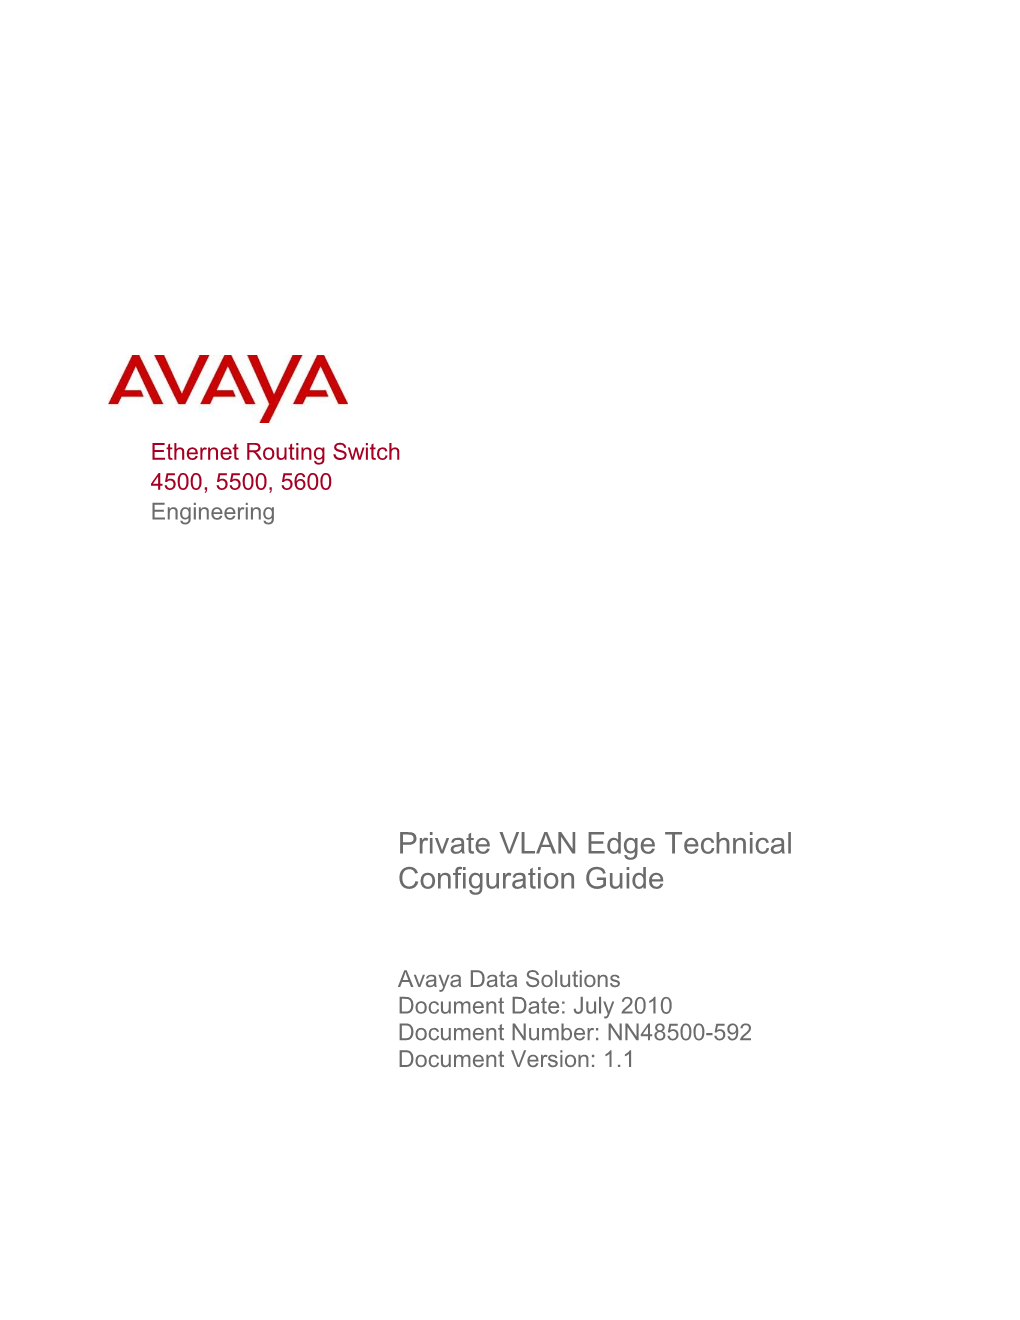 Private VLAN Edge Technical Configuration Guide